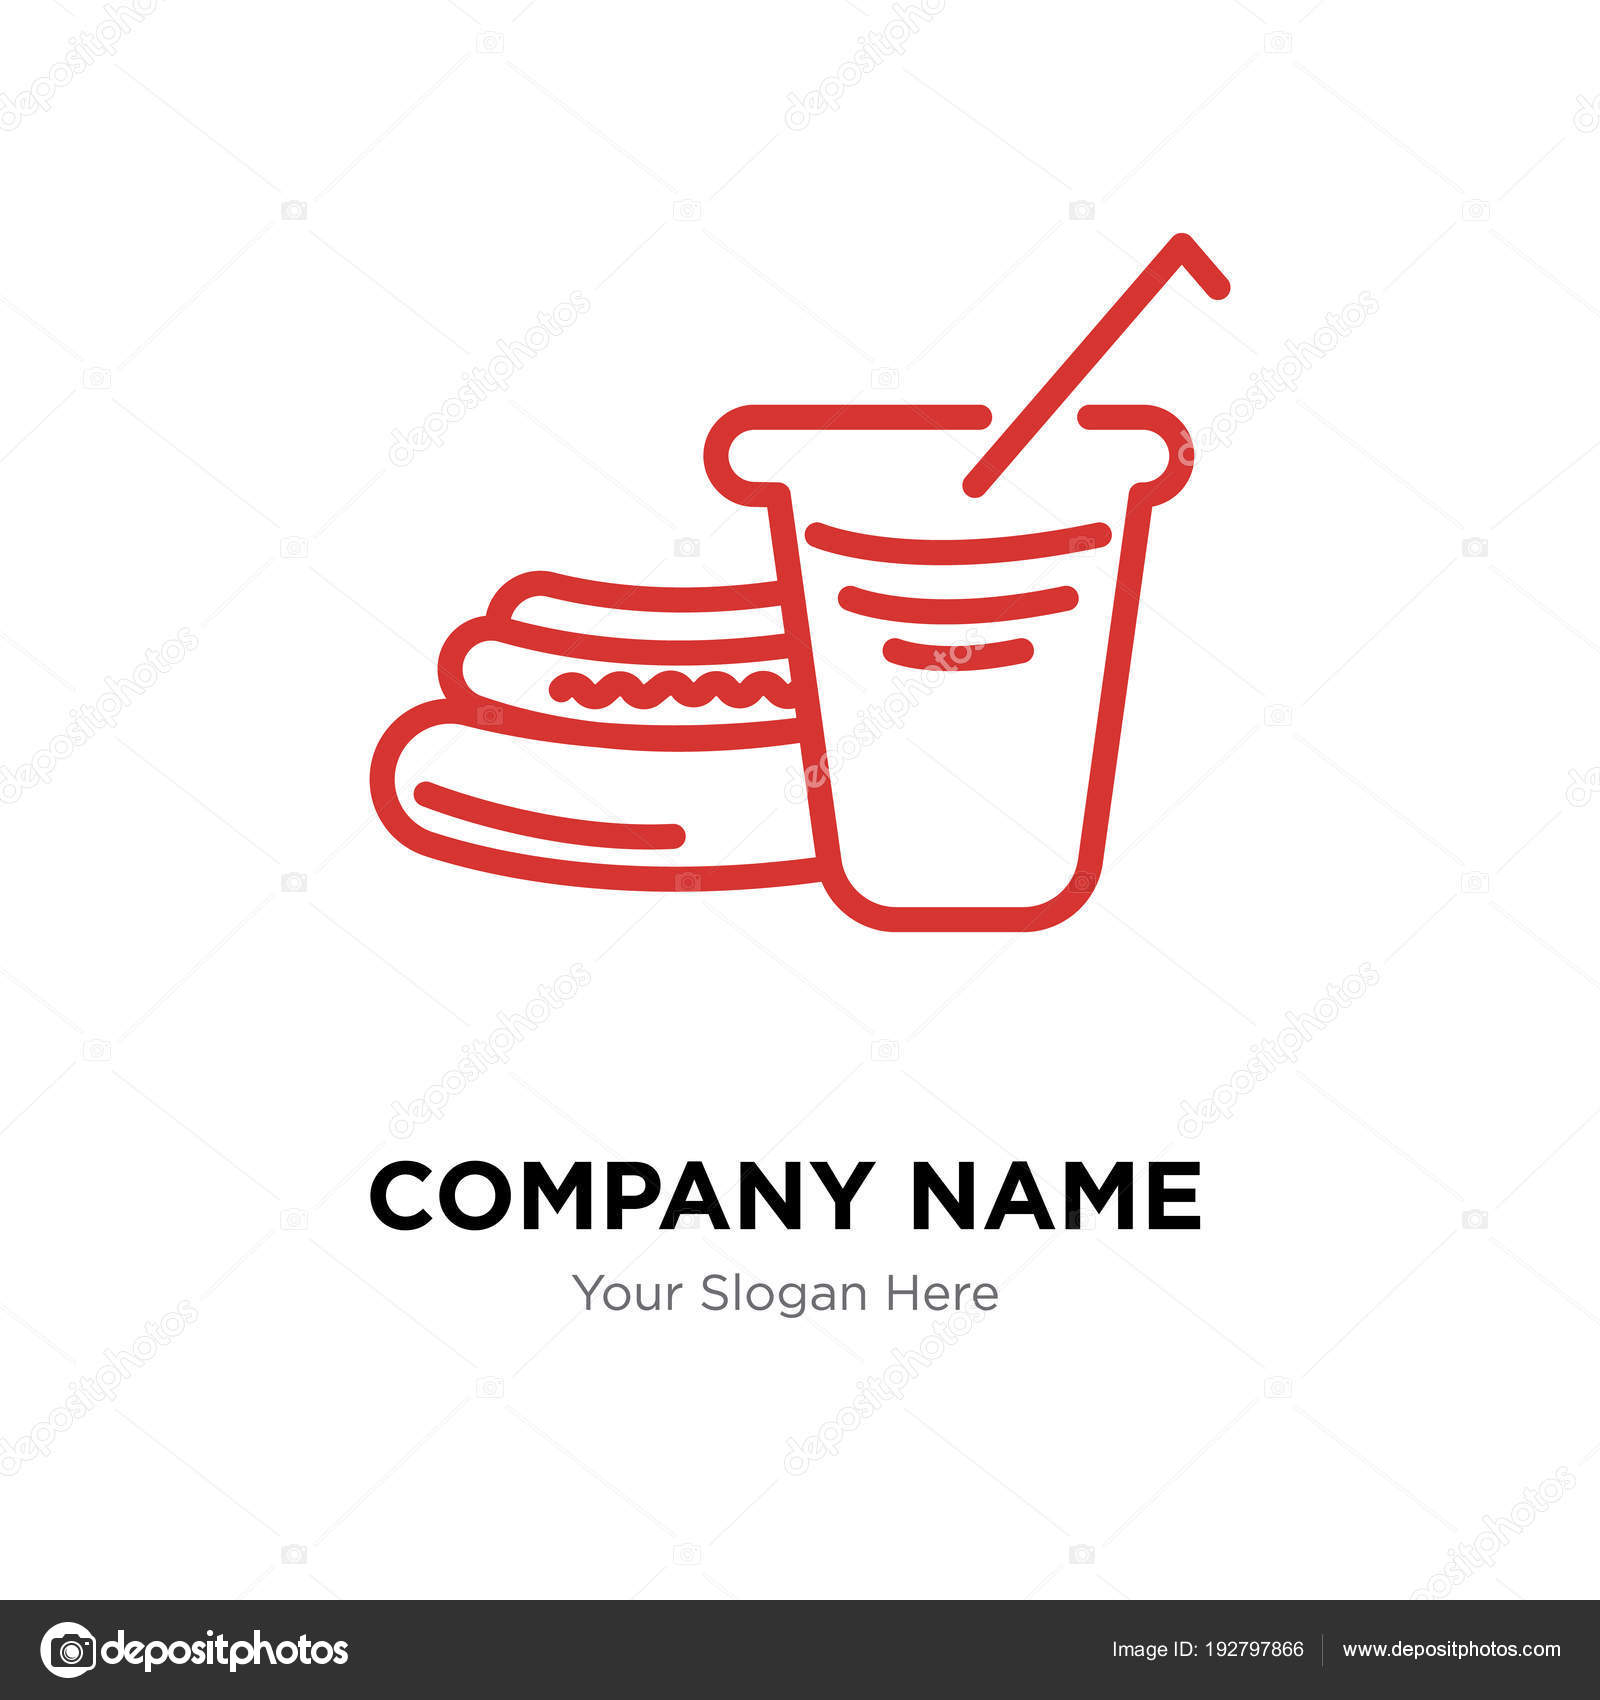 Hot Dog Company Logos